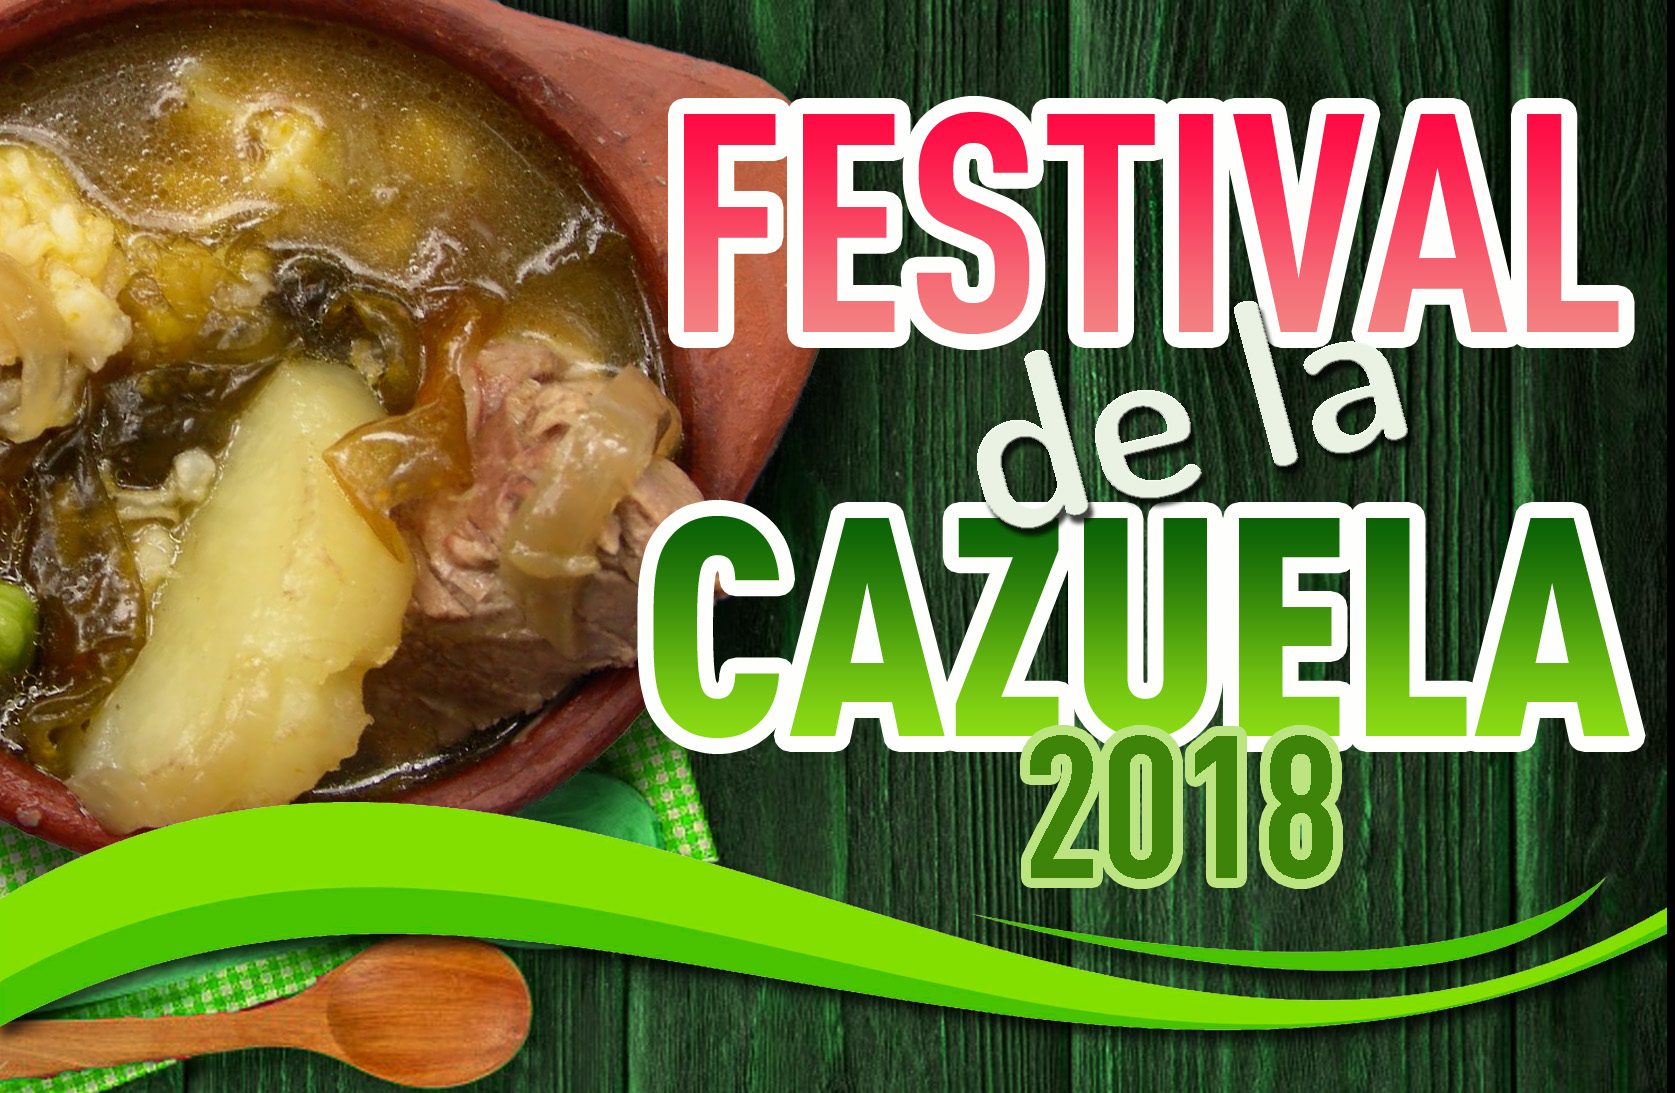 Municipio de Castro invita a participar de la primera versión del Festival de la Cazuela Chilota